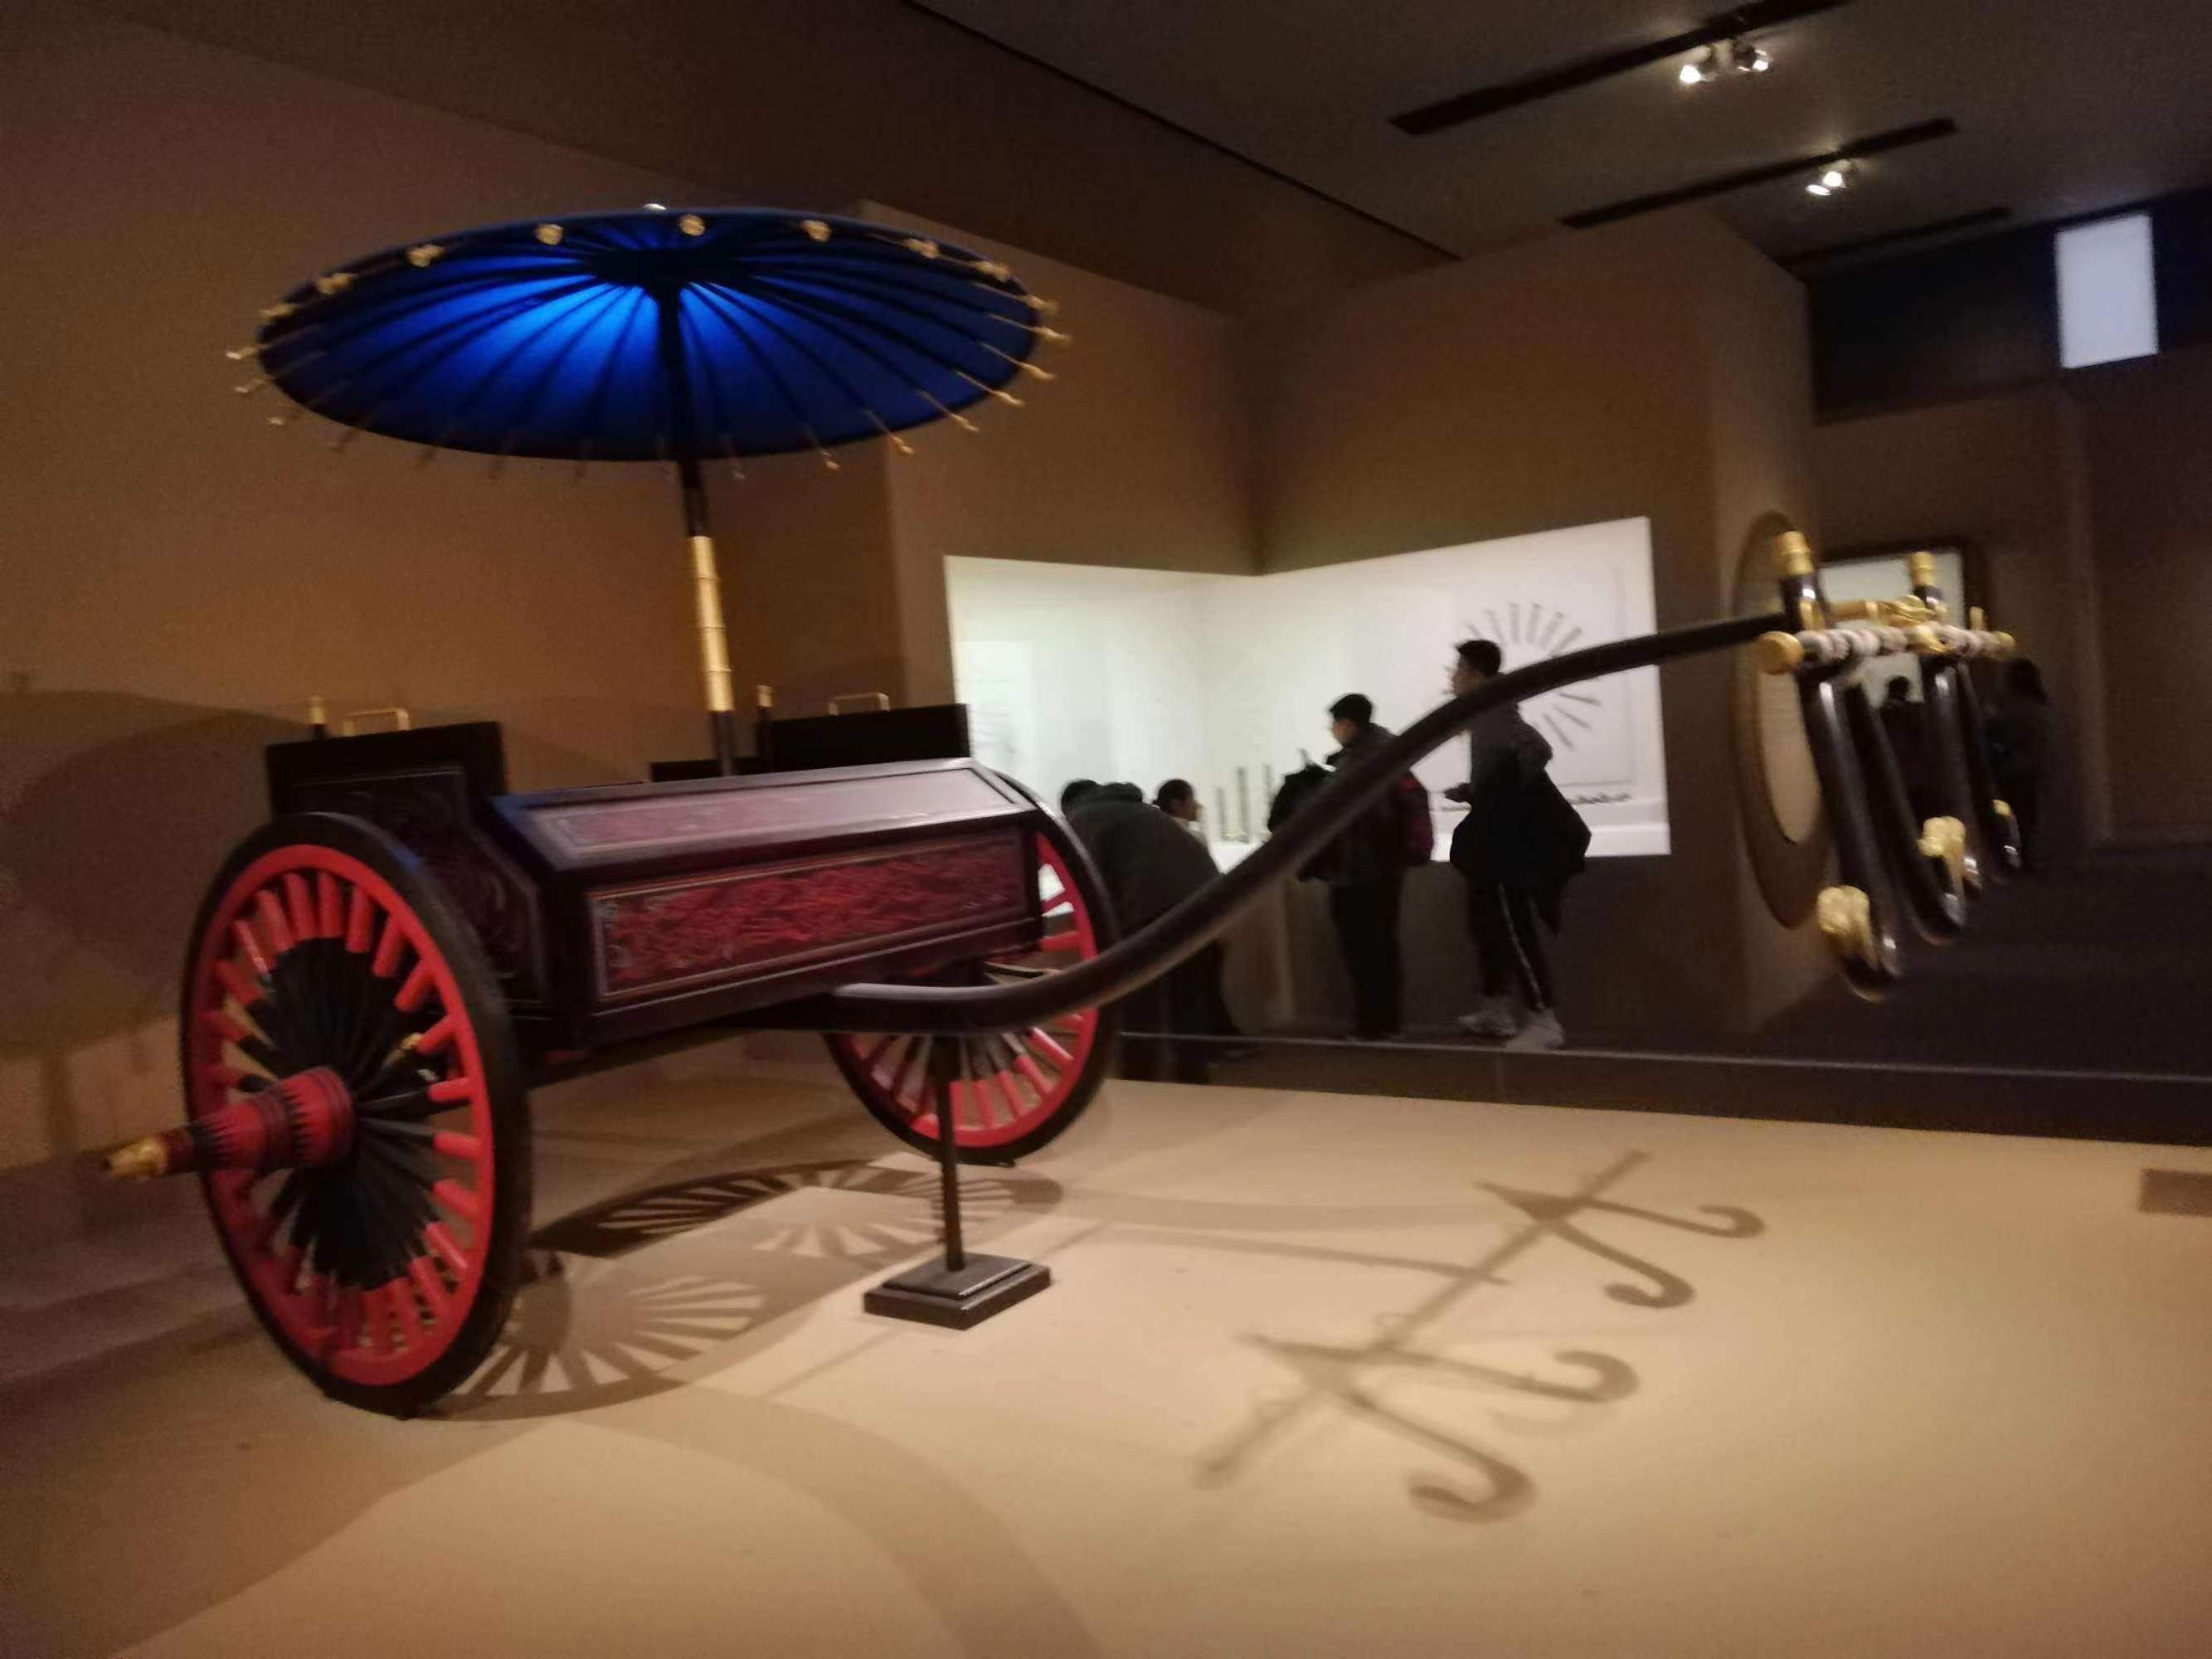 中国古代豪华马车内部图片